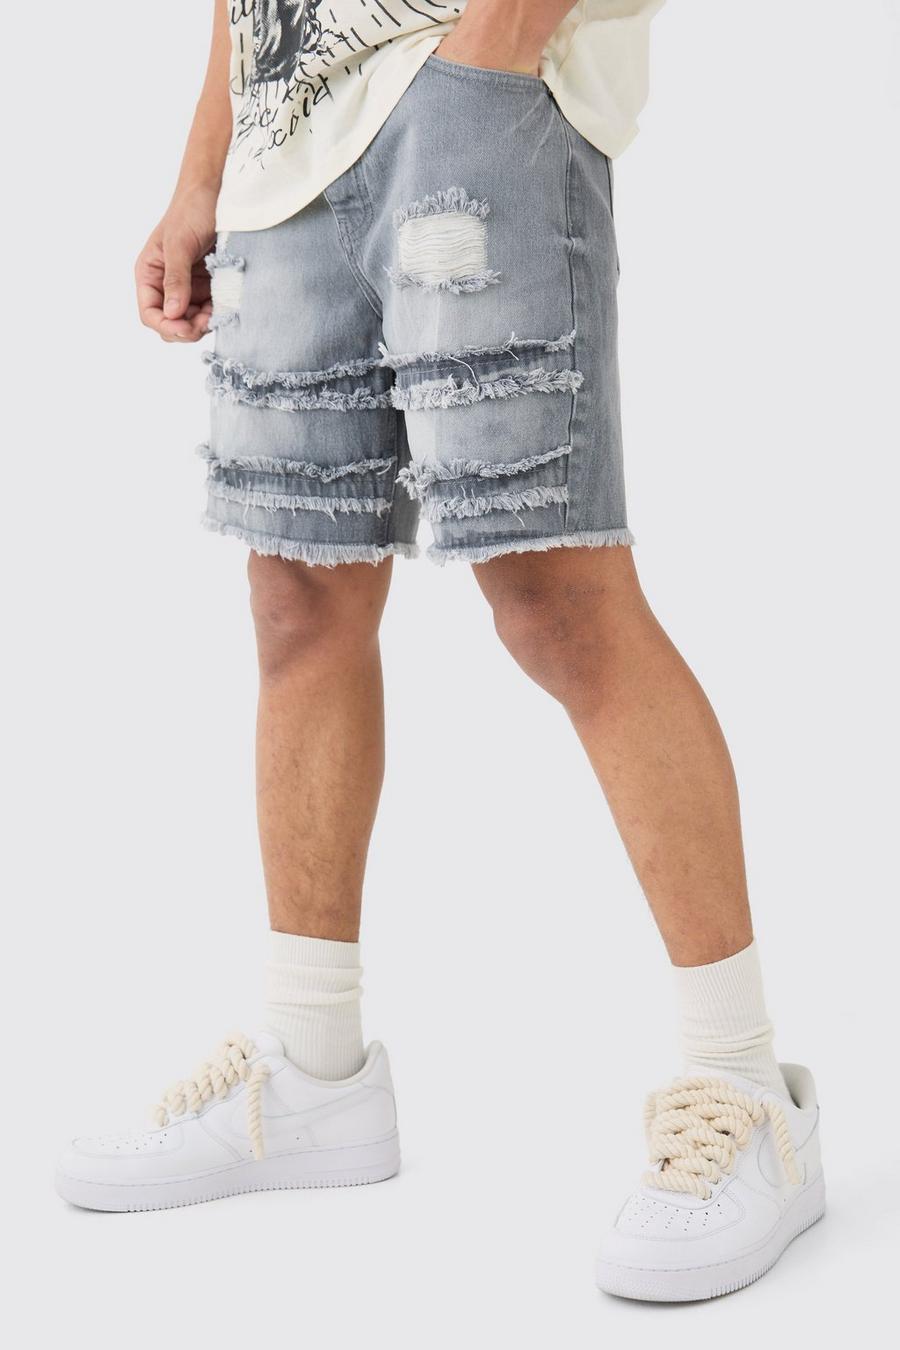 Pantalones cortos vaqueros holgados desgastados sin tratar en gris, Grey image number 1